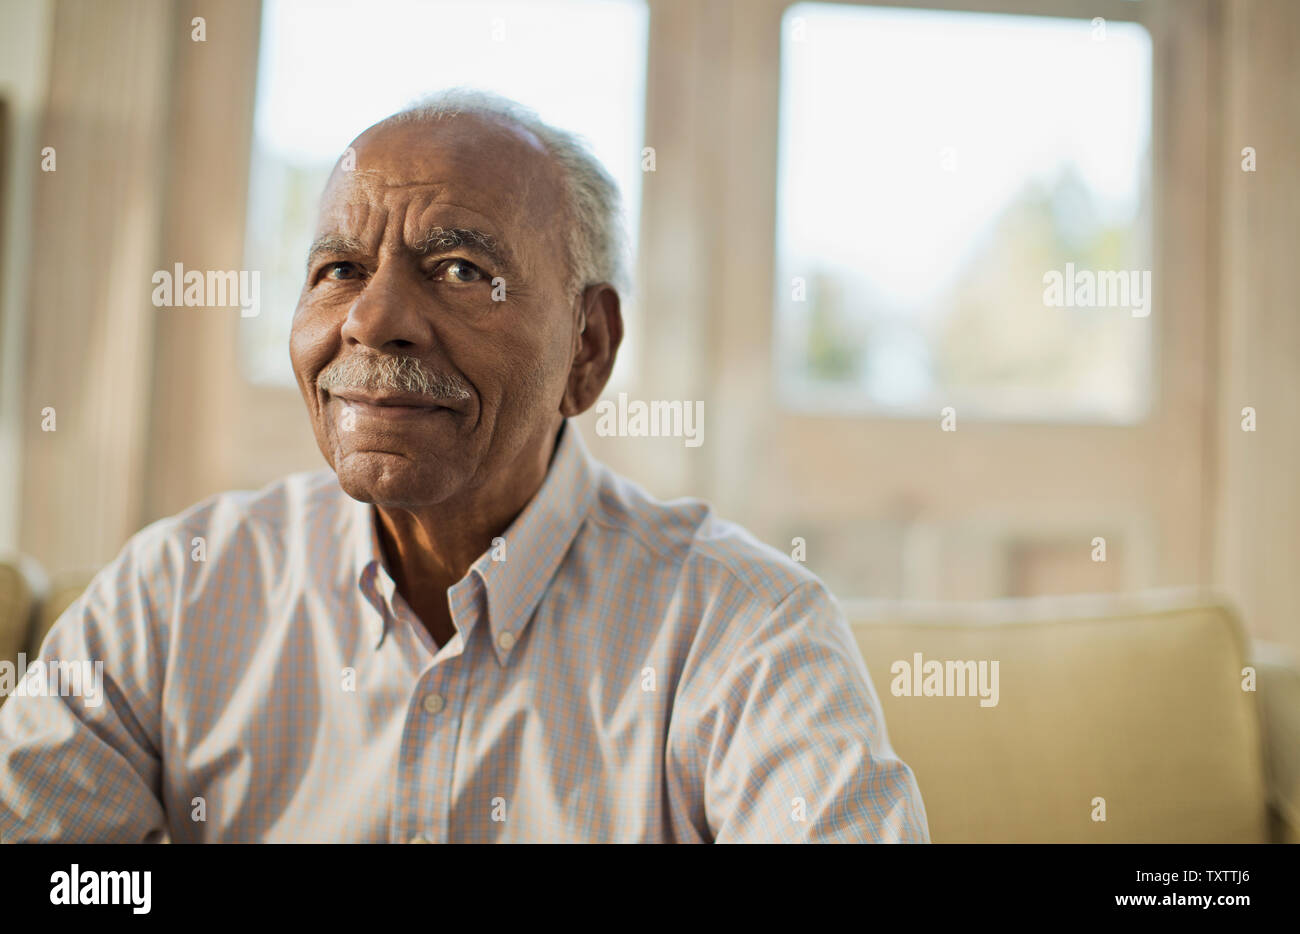 Portrait of a content senior man. Stock Photo